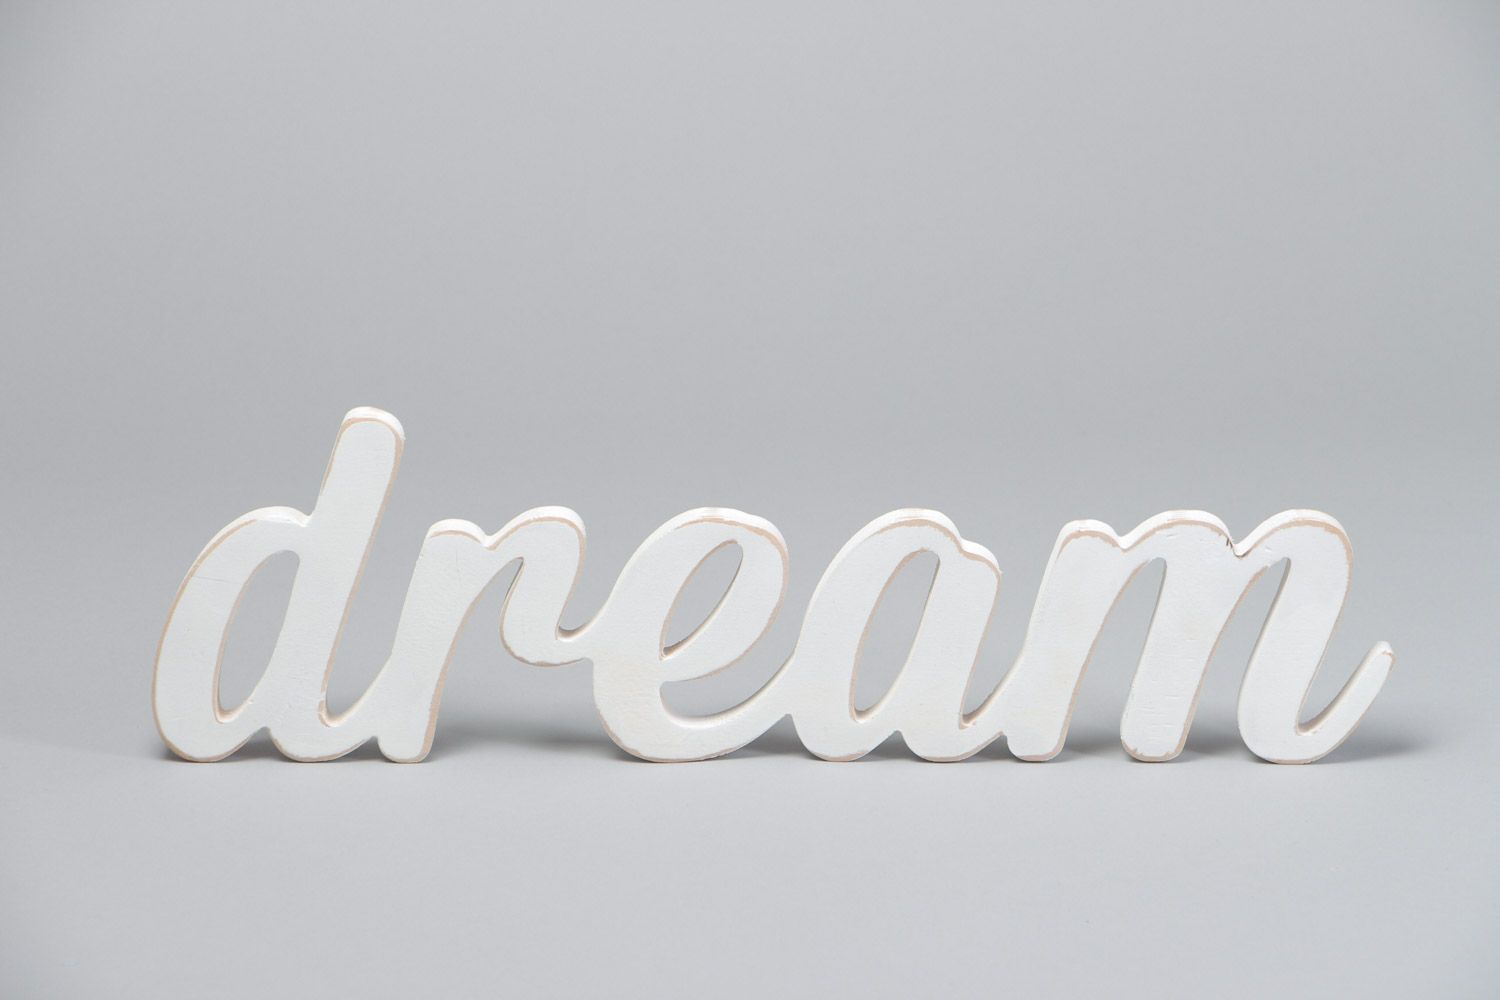 Декоративная надпись из фанеры Dream расписанная акриловыми красками хэнд мэйд фото 2